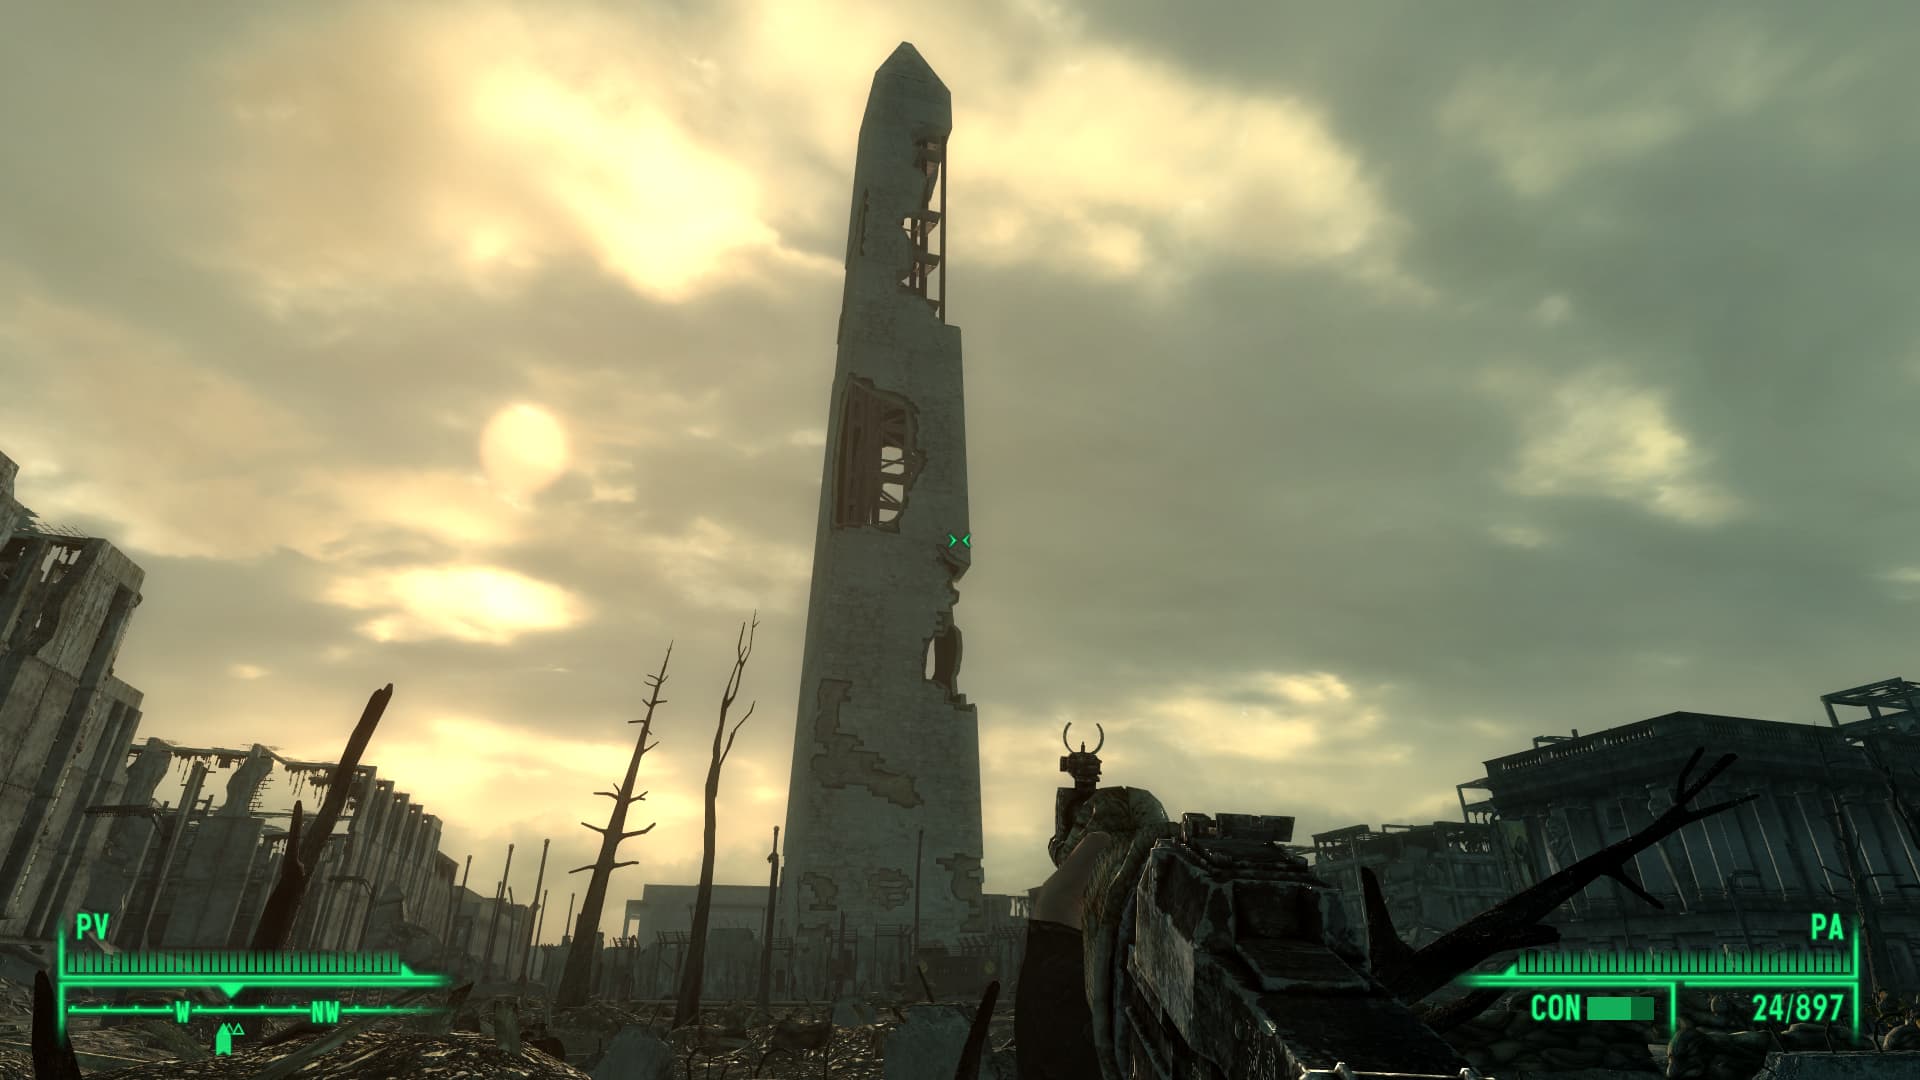 Imagen de Fallout captura hecha a mano, el obelisco de Washington, paras aquí en el juego para hacer que suene Radio Galaxia por todo el Yermo, la mejor radio